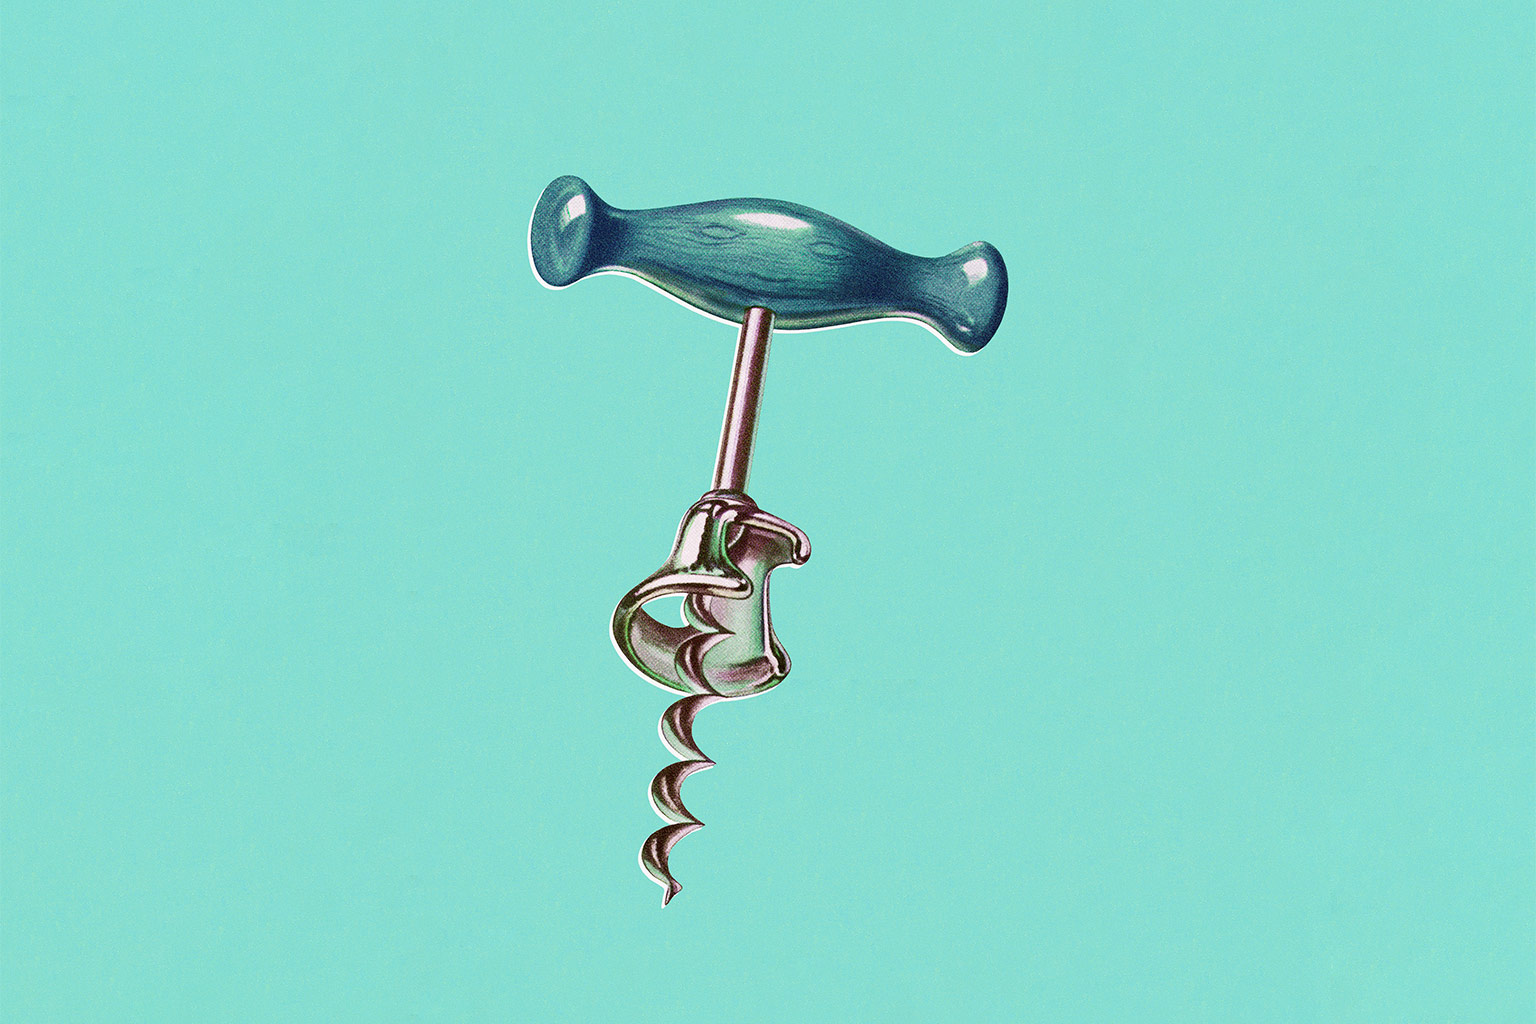 Vintage illustration of a corkscrew on green background